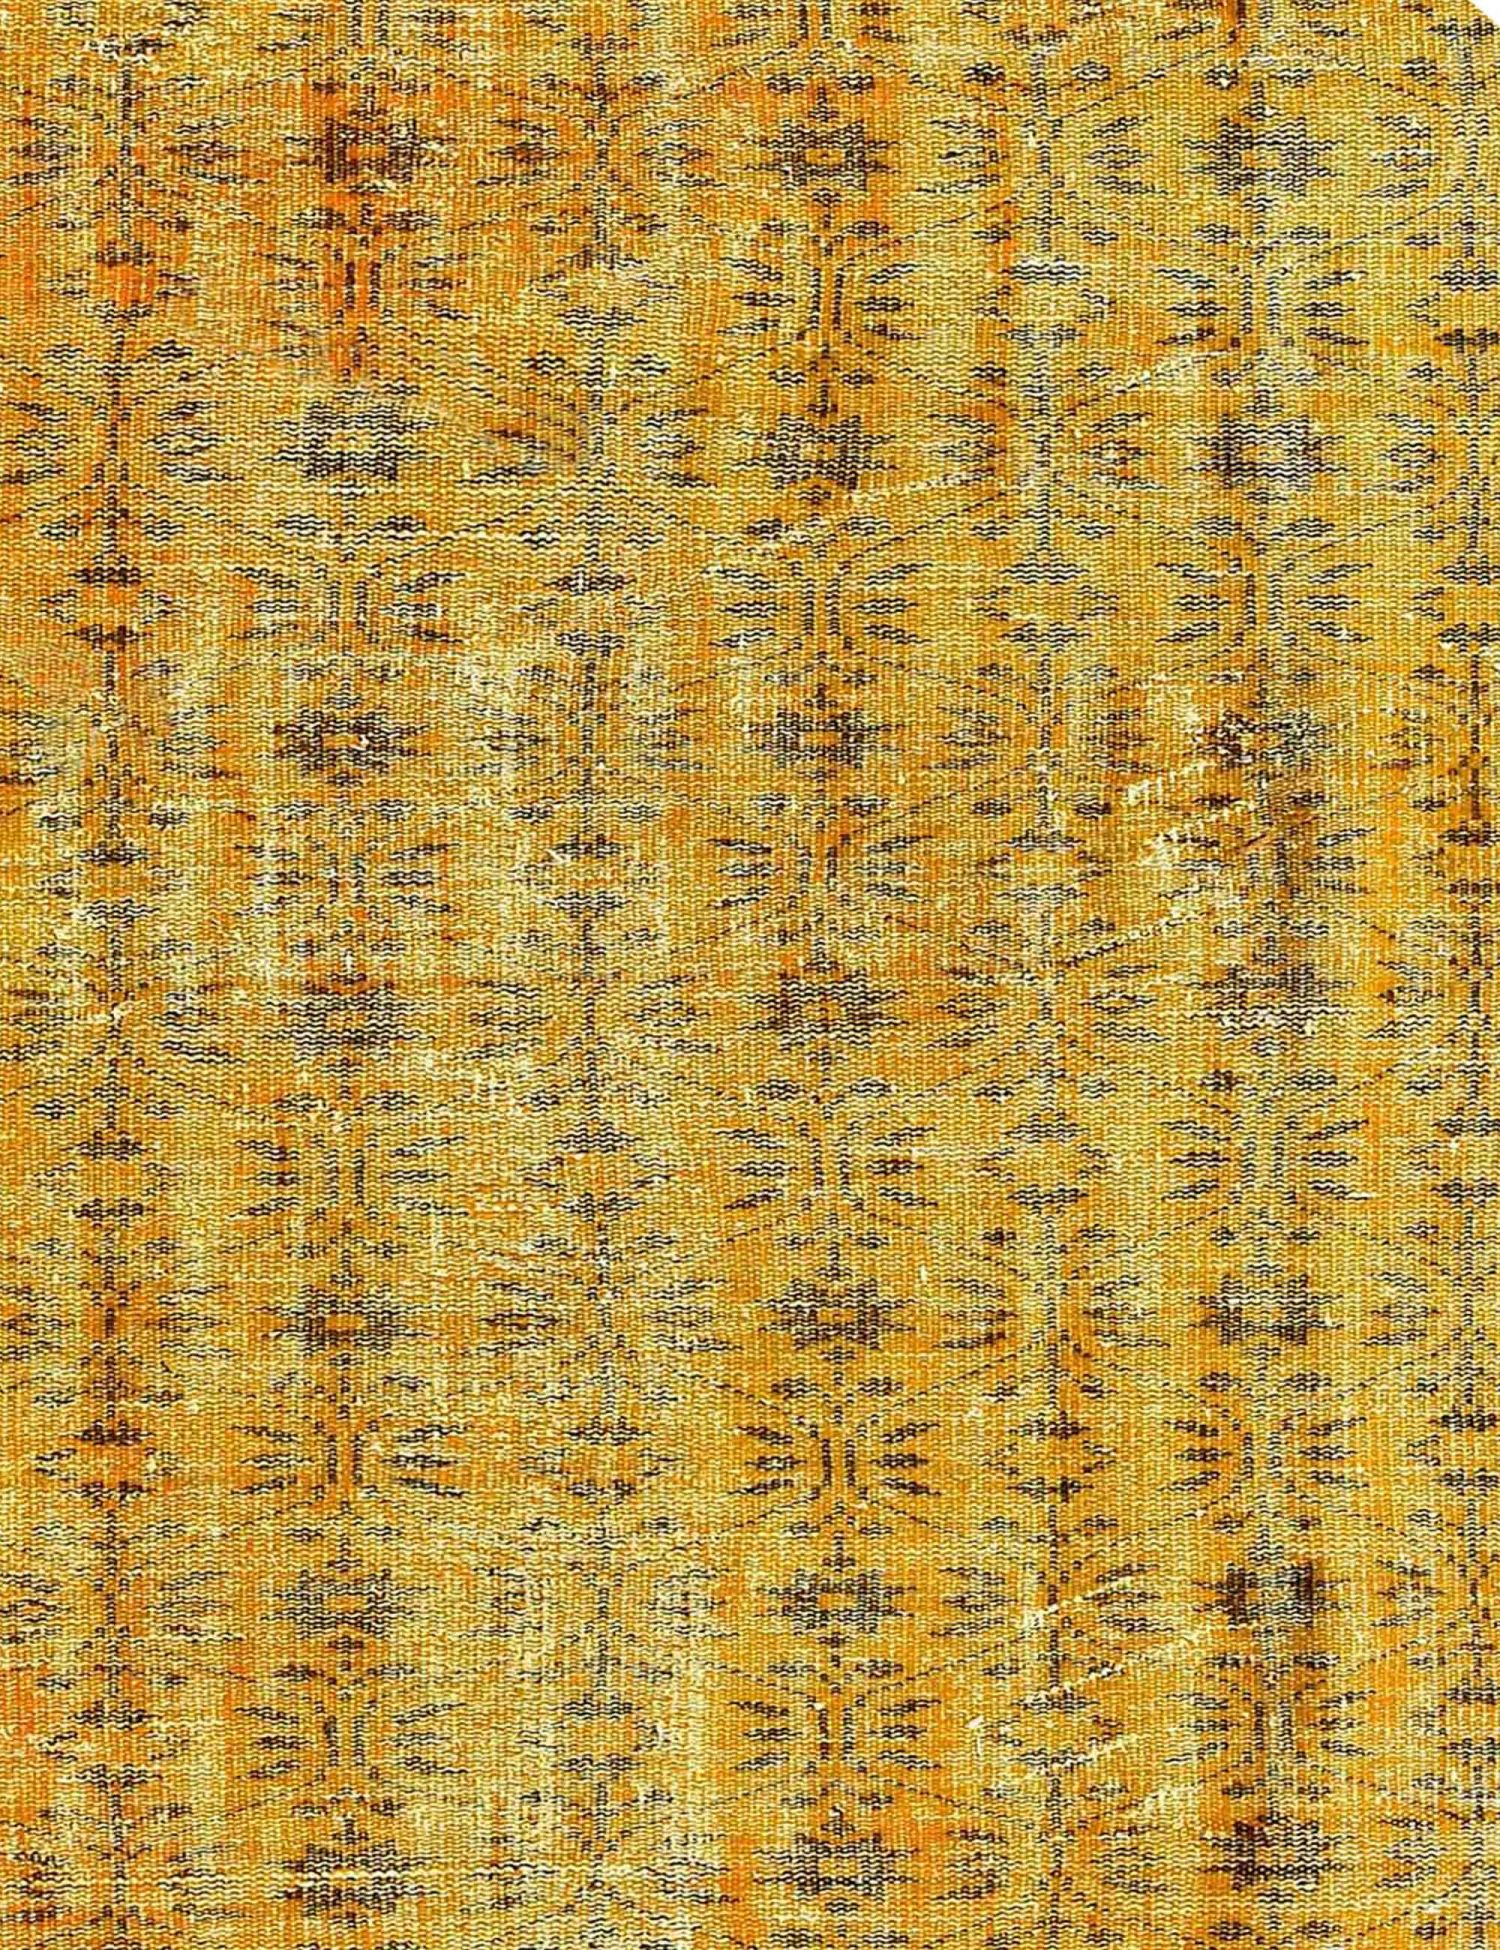 Rund Vintage Teppich  gelb <br/>181 x 181 cm